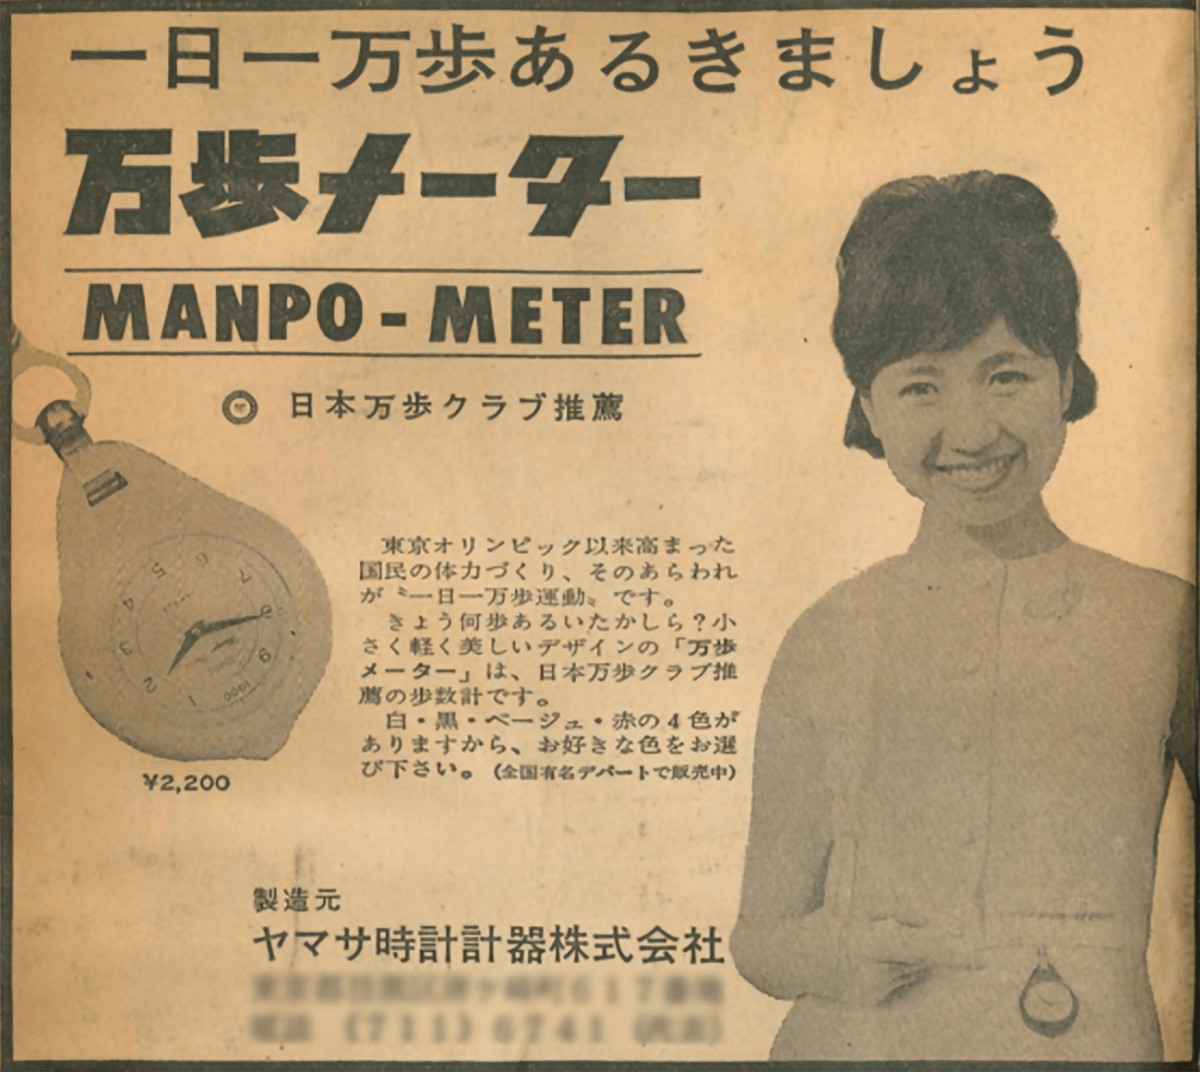 Publicité pour Manpo-kei, prônant 10 000 pas par jour